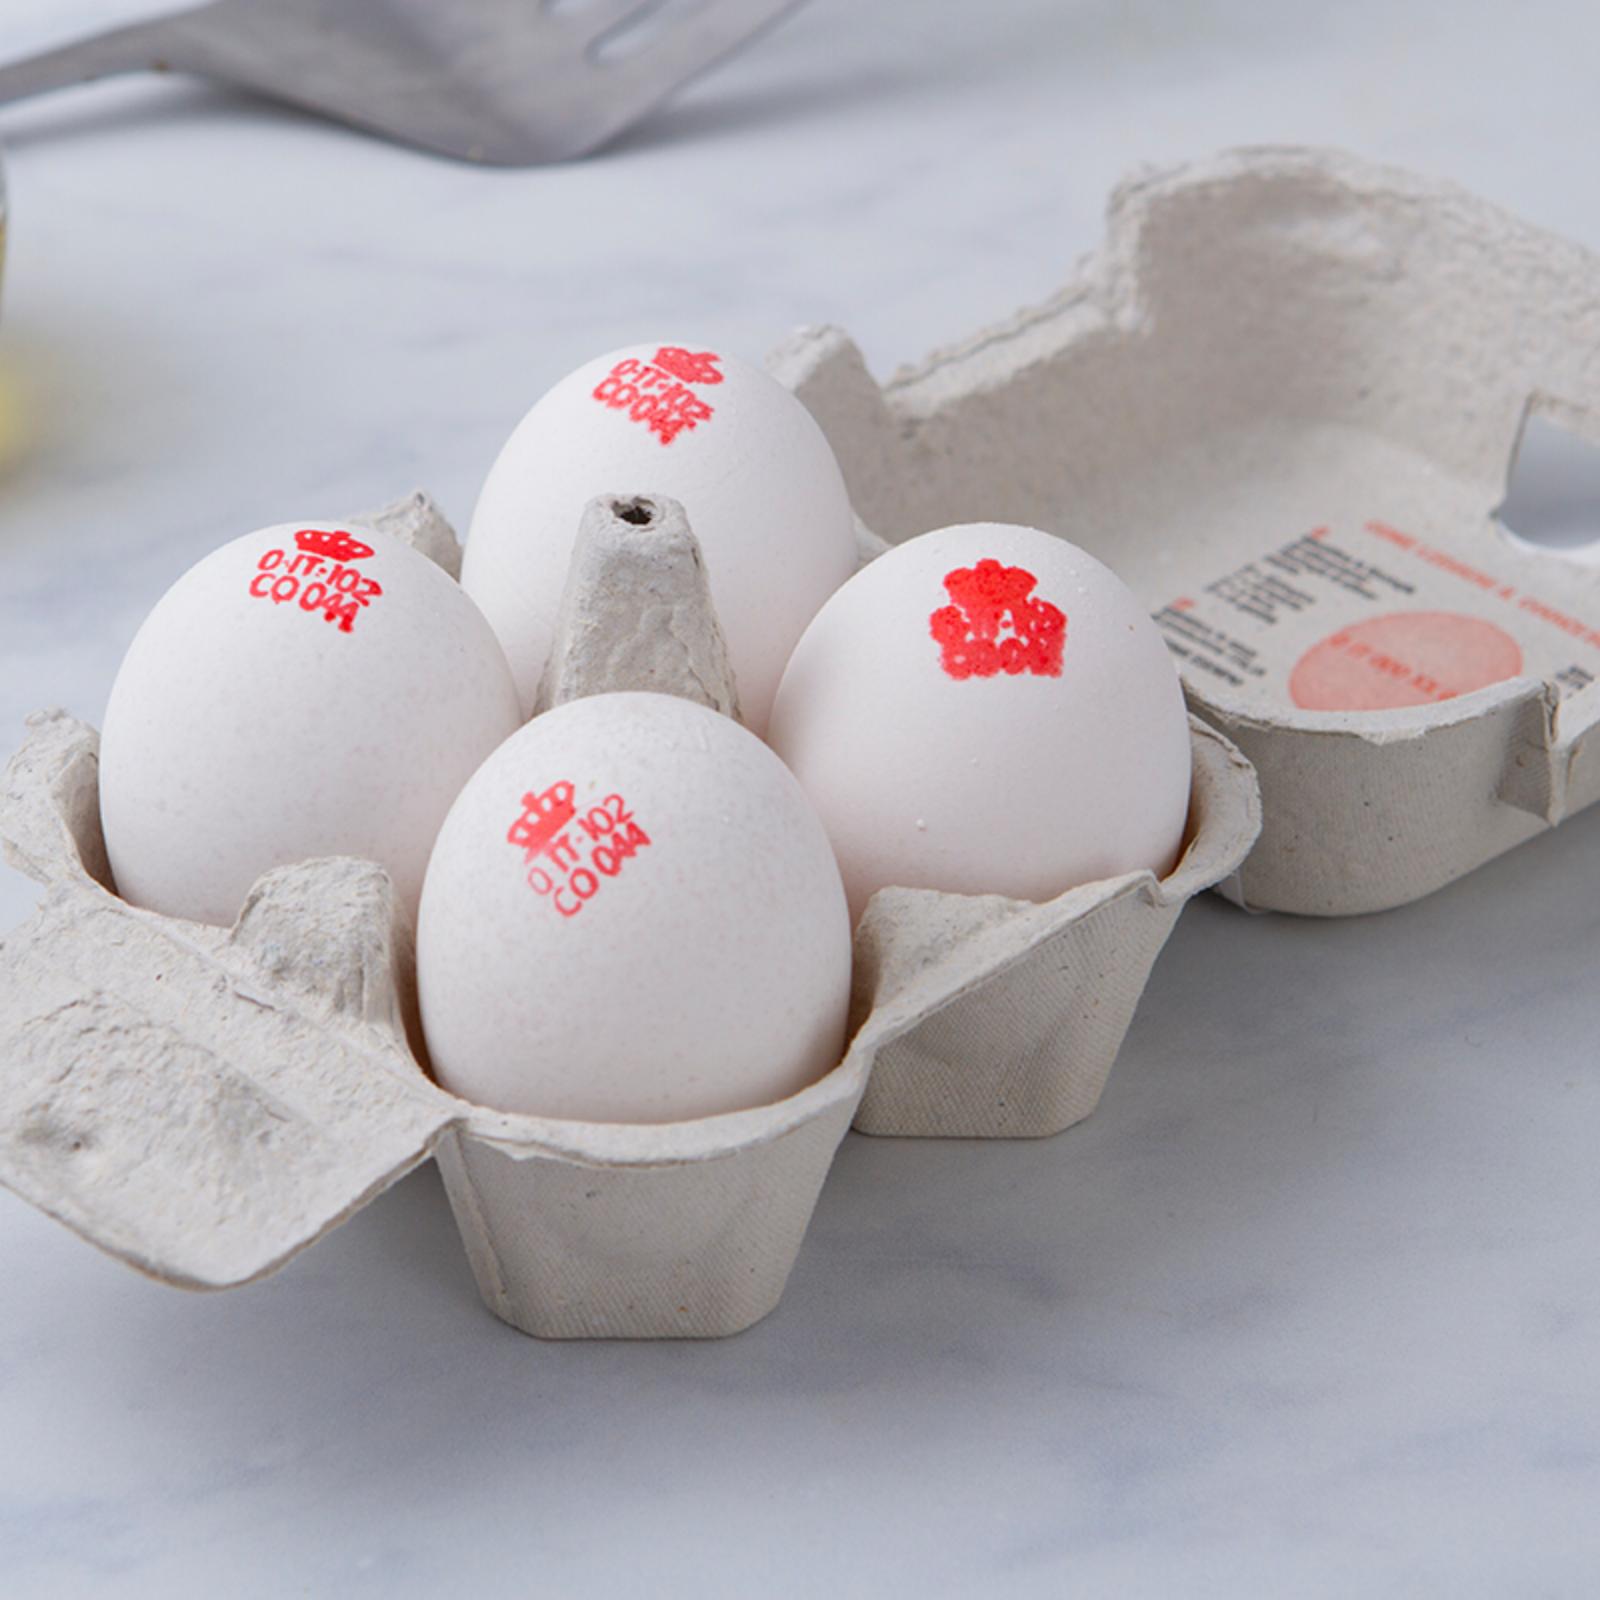 4 Uova bianche alta qualità BIO da galline al pascolo